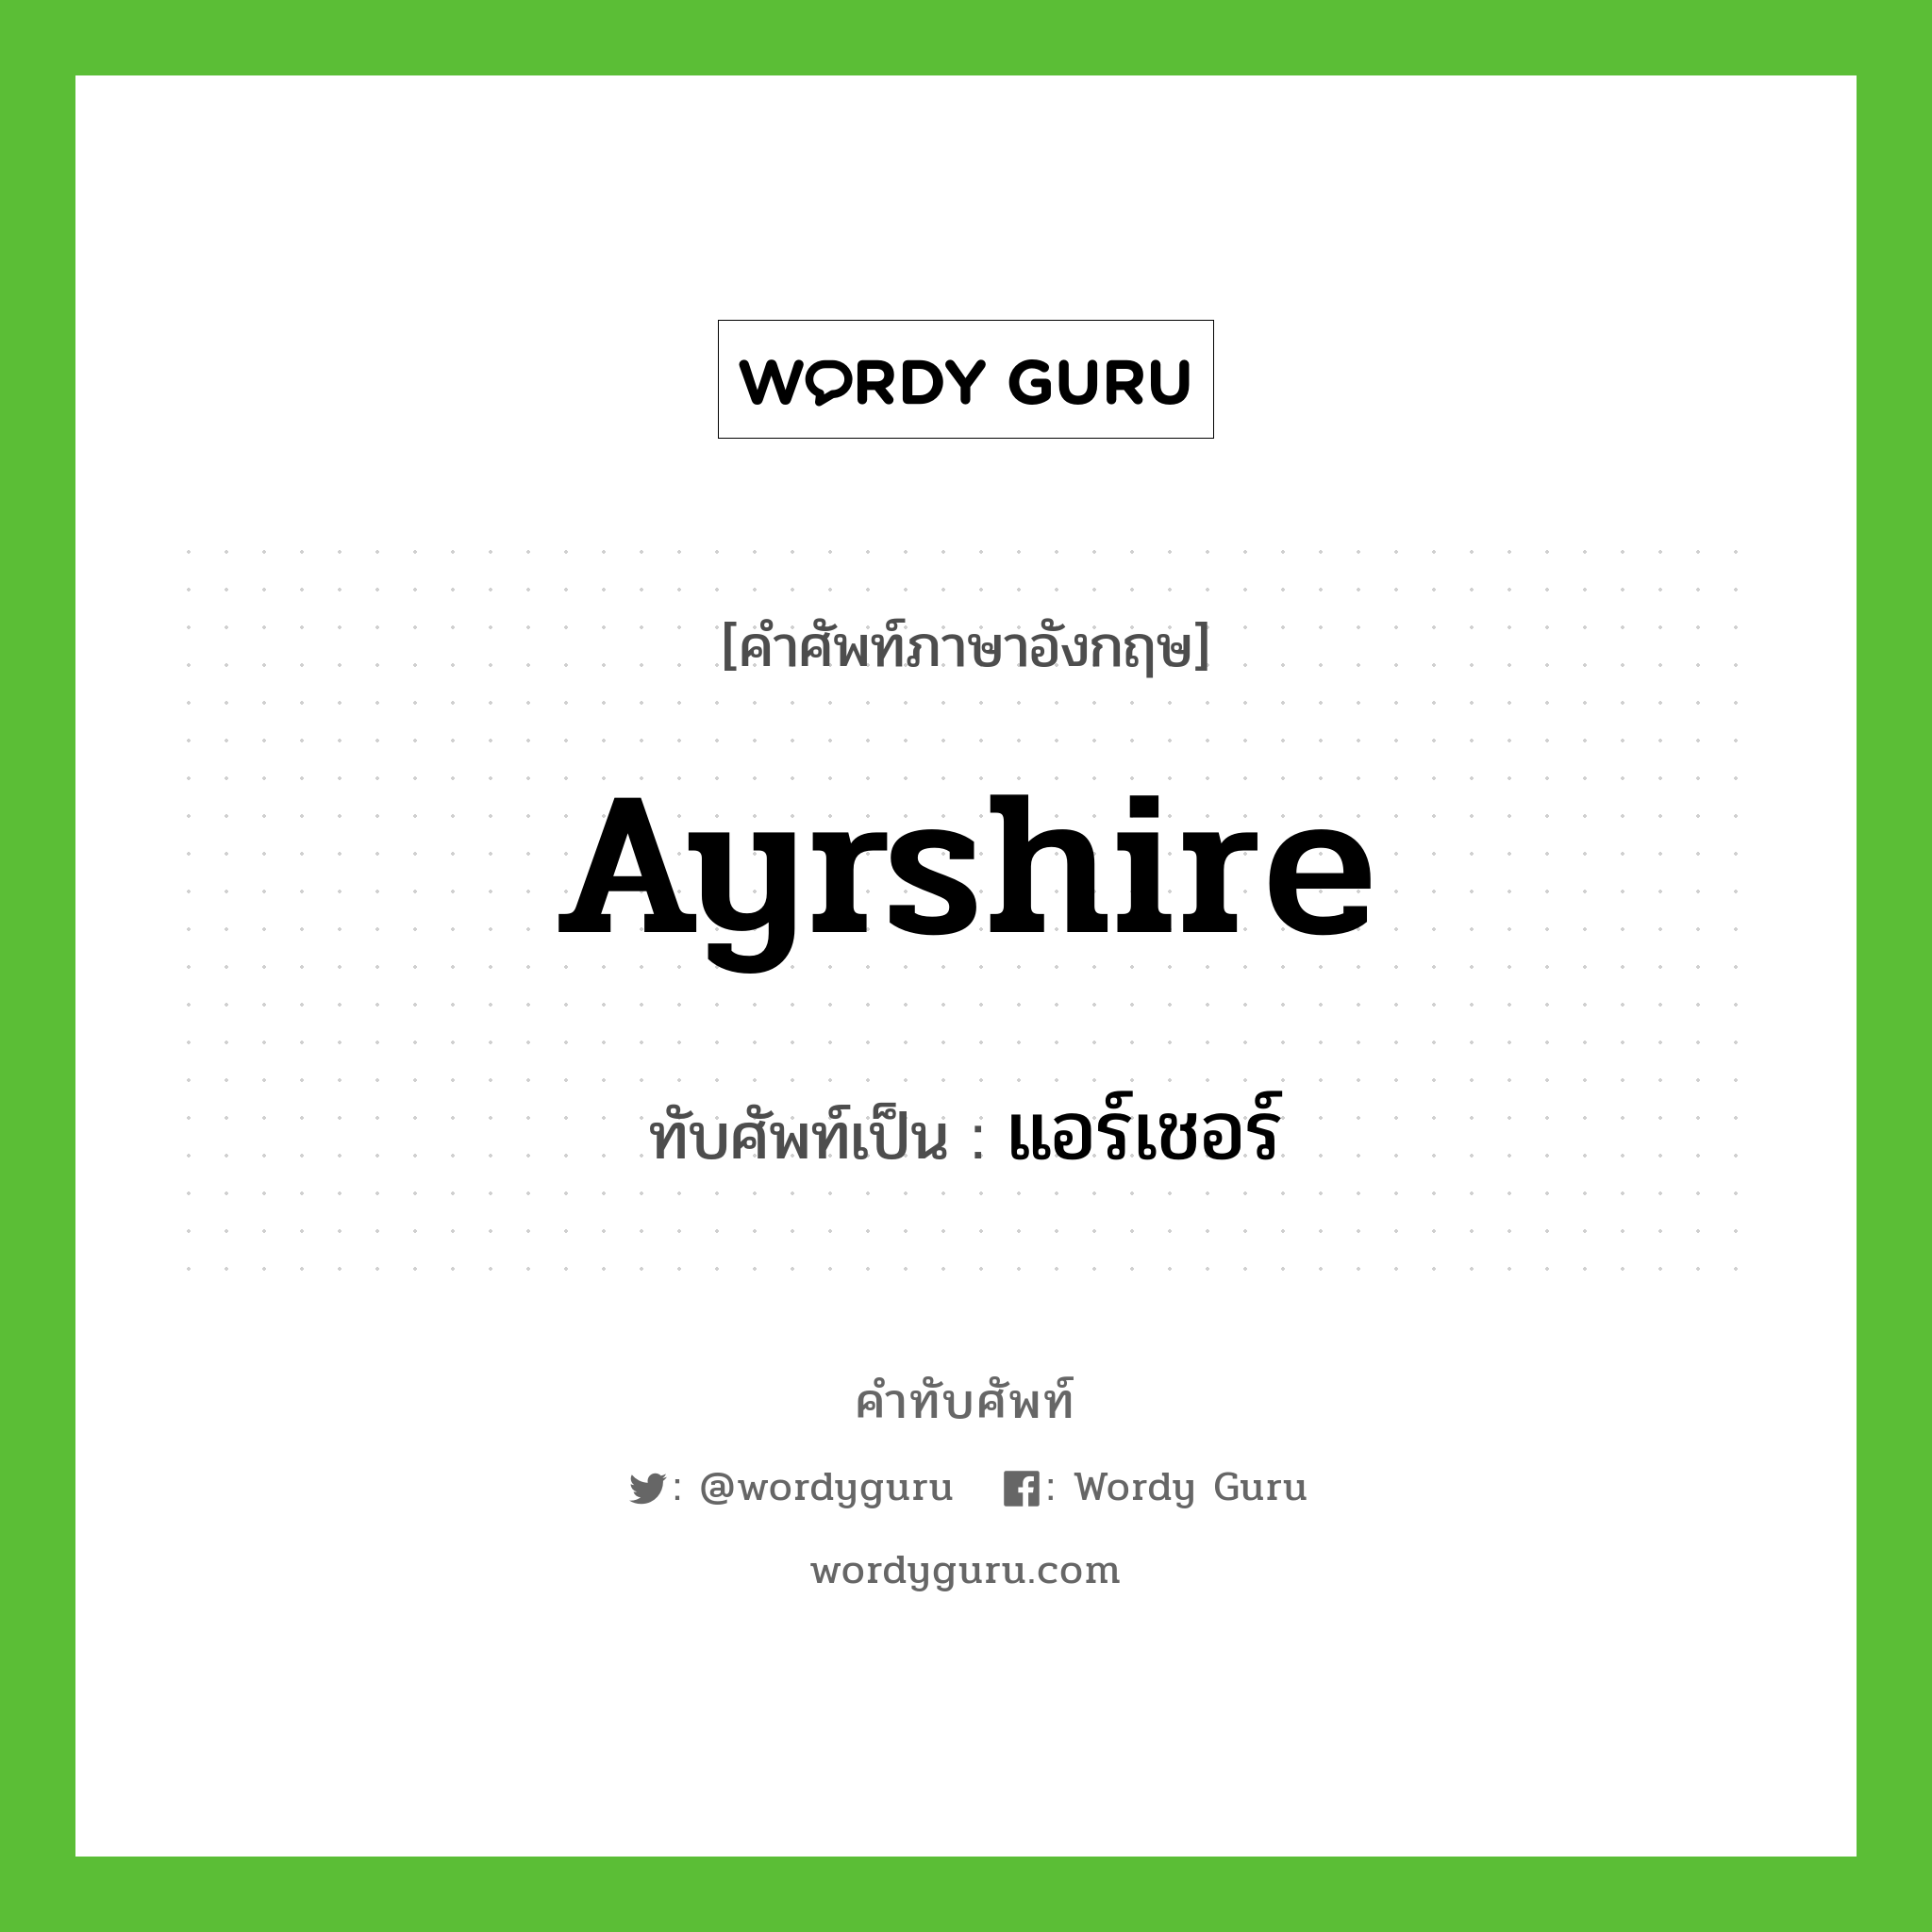 Ayrshire เขียนเป็นคำไทยว่าอะไร?, คำศัพท์ภาษาอังกฤษ Ayrshire ทับศัพท์เป็น แอร์เชอร์